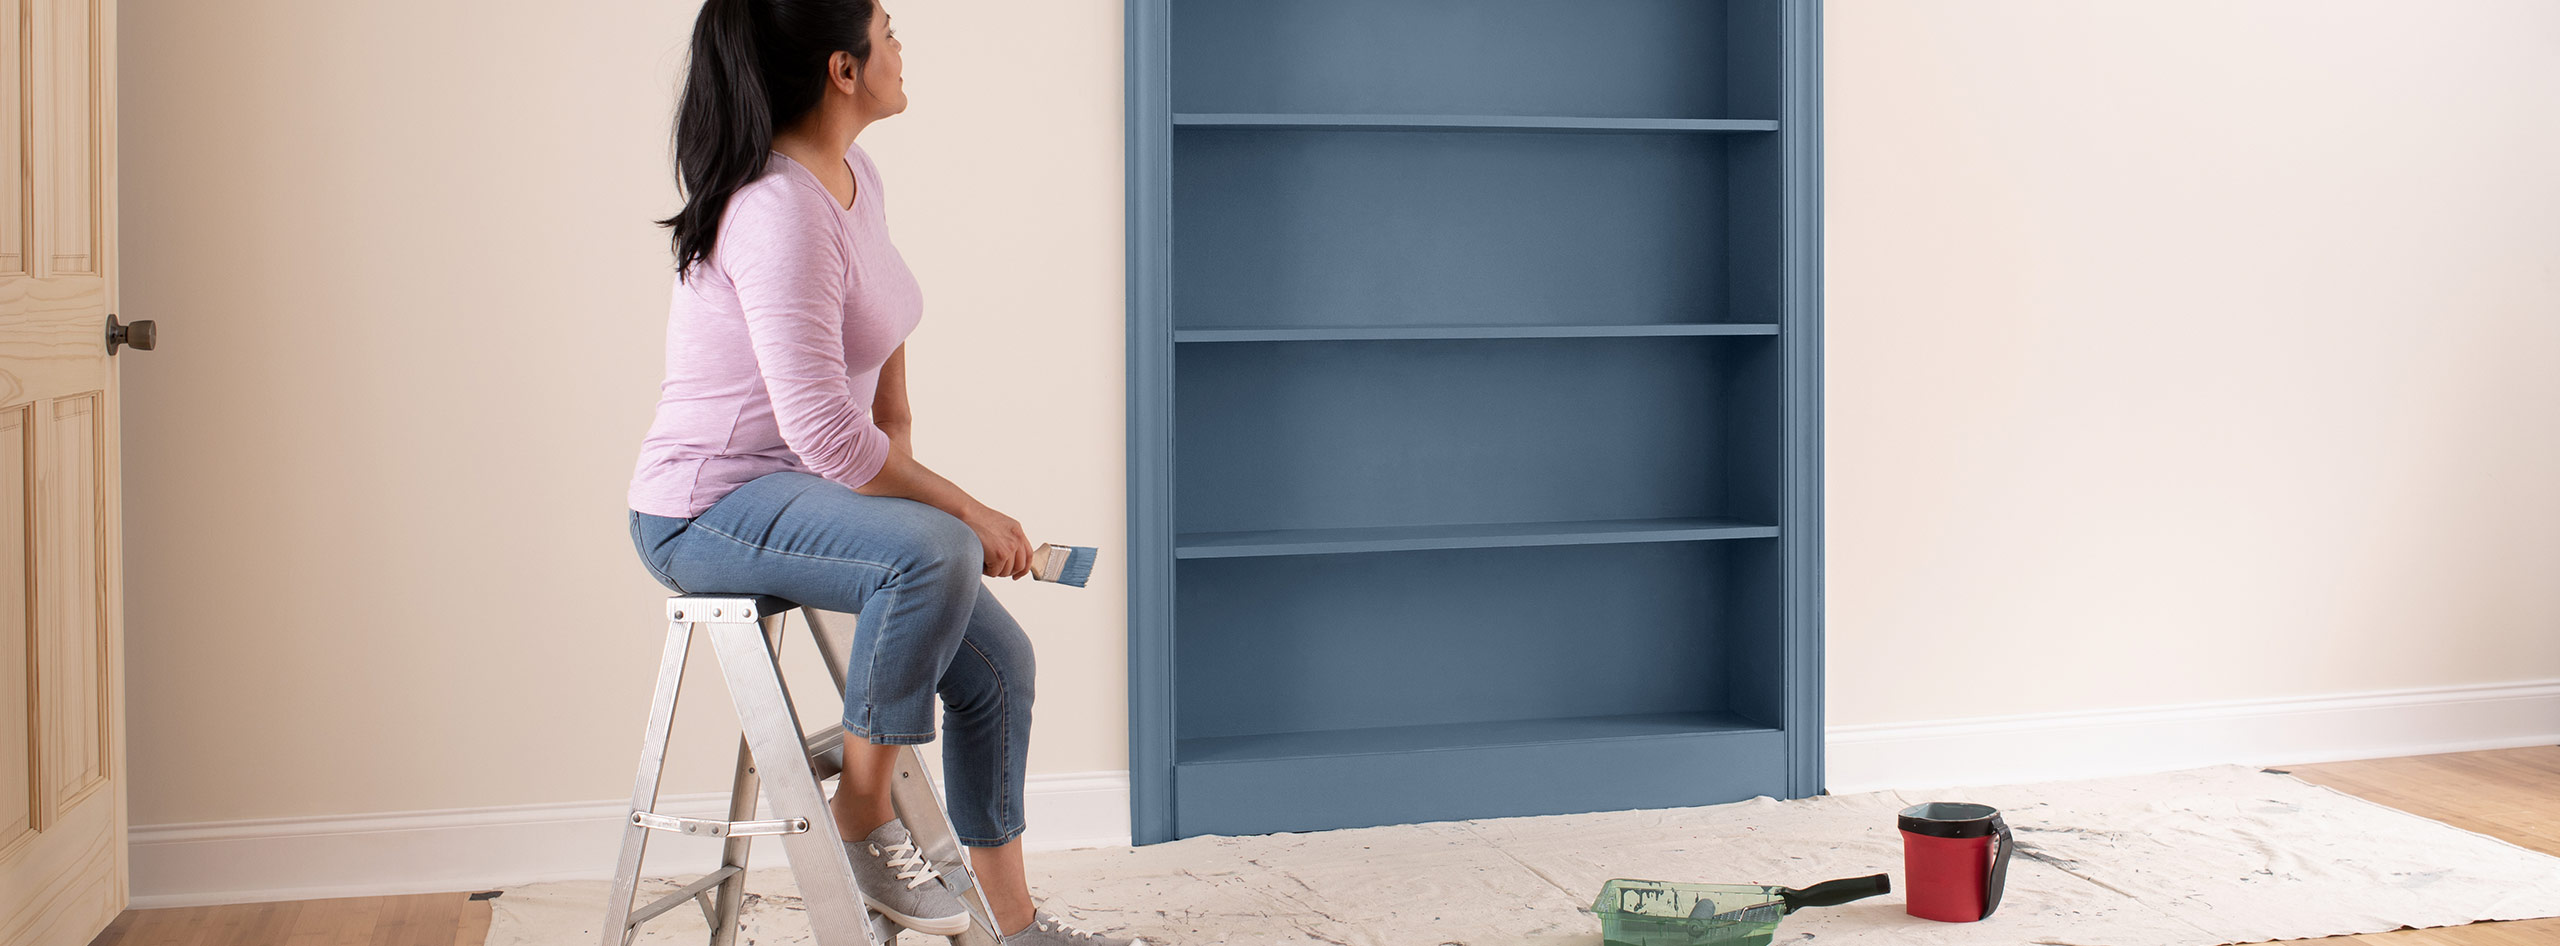 Une propriétaire est assise sur un escabeau dans une pièce peinte en rose, et elle observe sa bibliothèque fraîchement peinturée dans un bleu tirant sur le gris.